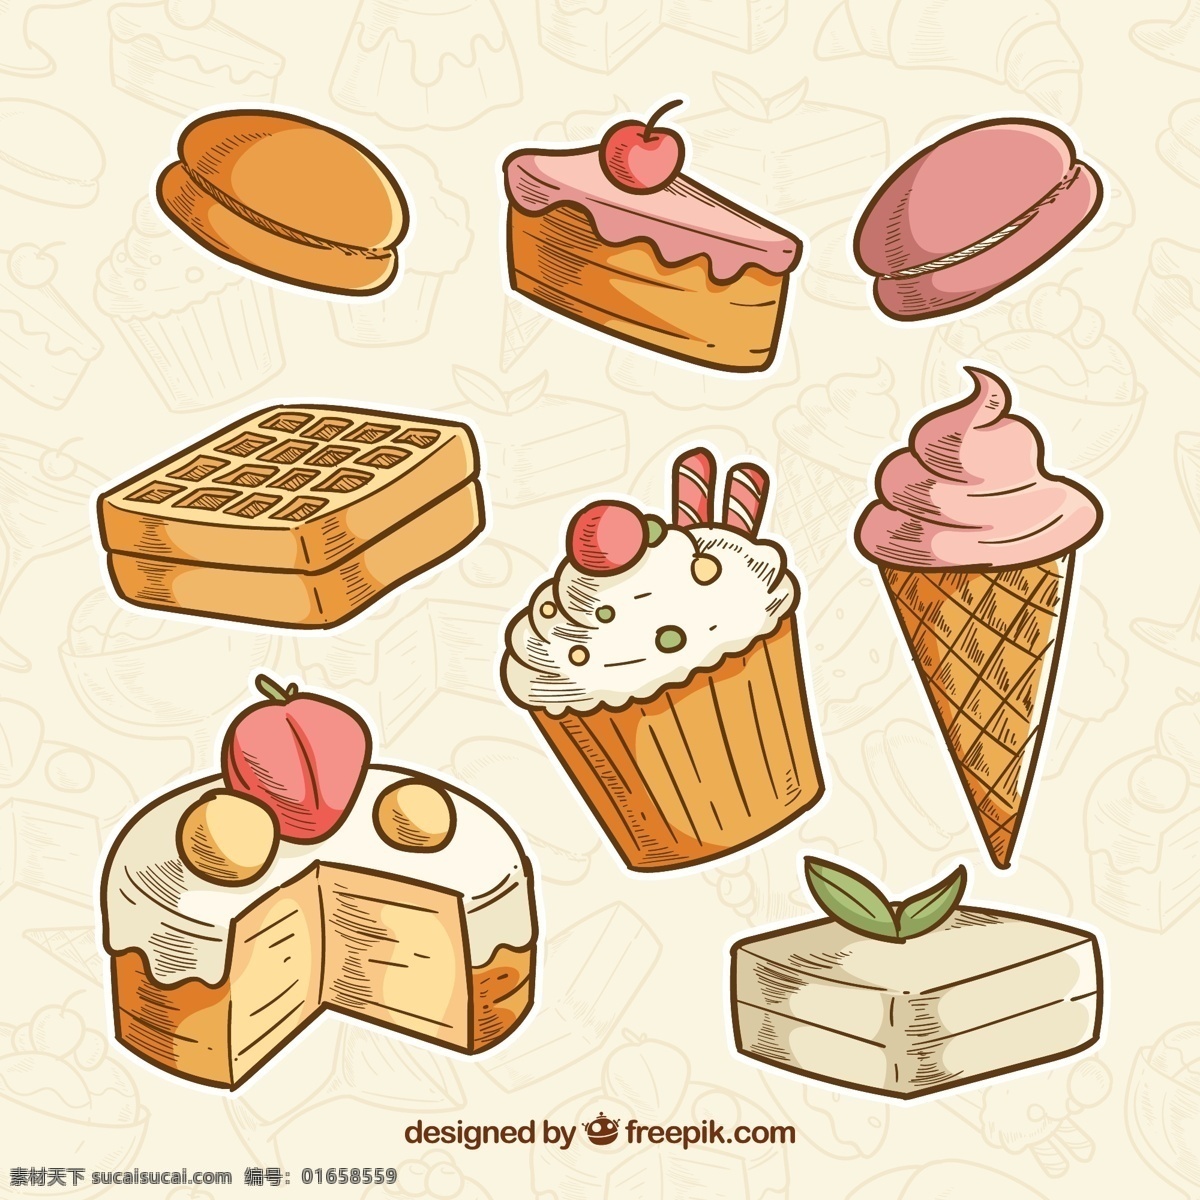 款 手绘 甜点 矢量 铜锣烧 三角蛋糕 纸杯蛋糕 冰淇淋 蛋糕 草莓 华夫饼 樱桃 水果 面包 标志图标 其他图标